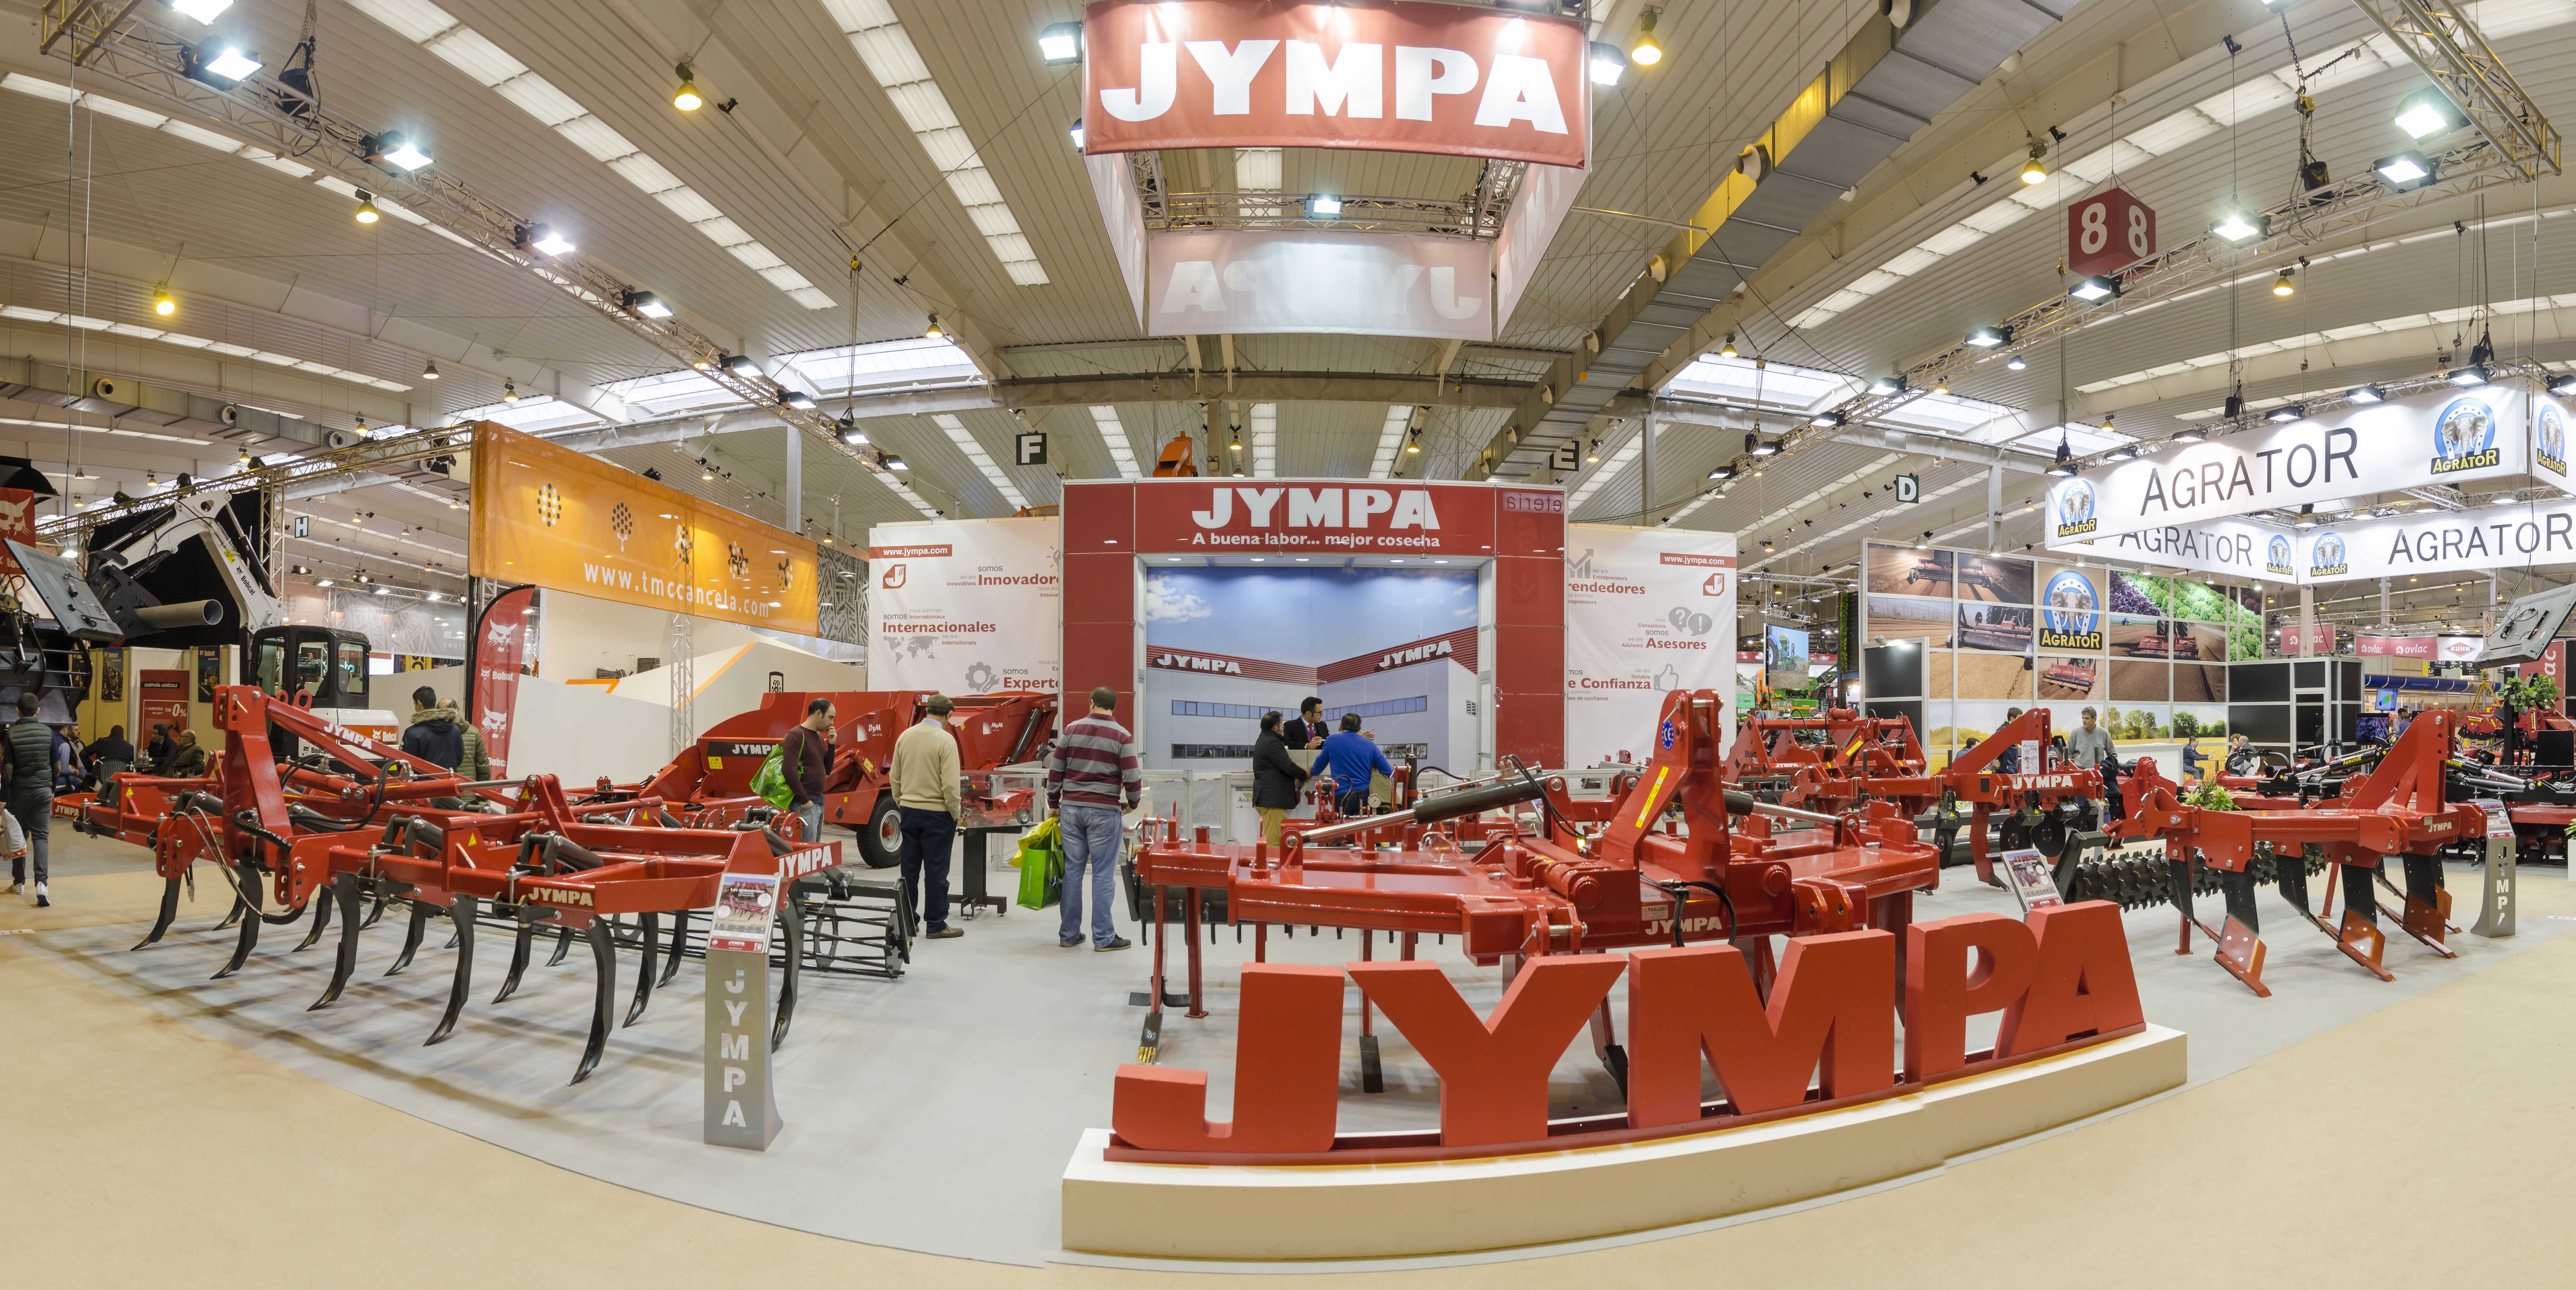 Imagen panormica del stand de Jympa en FIMA 2018